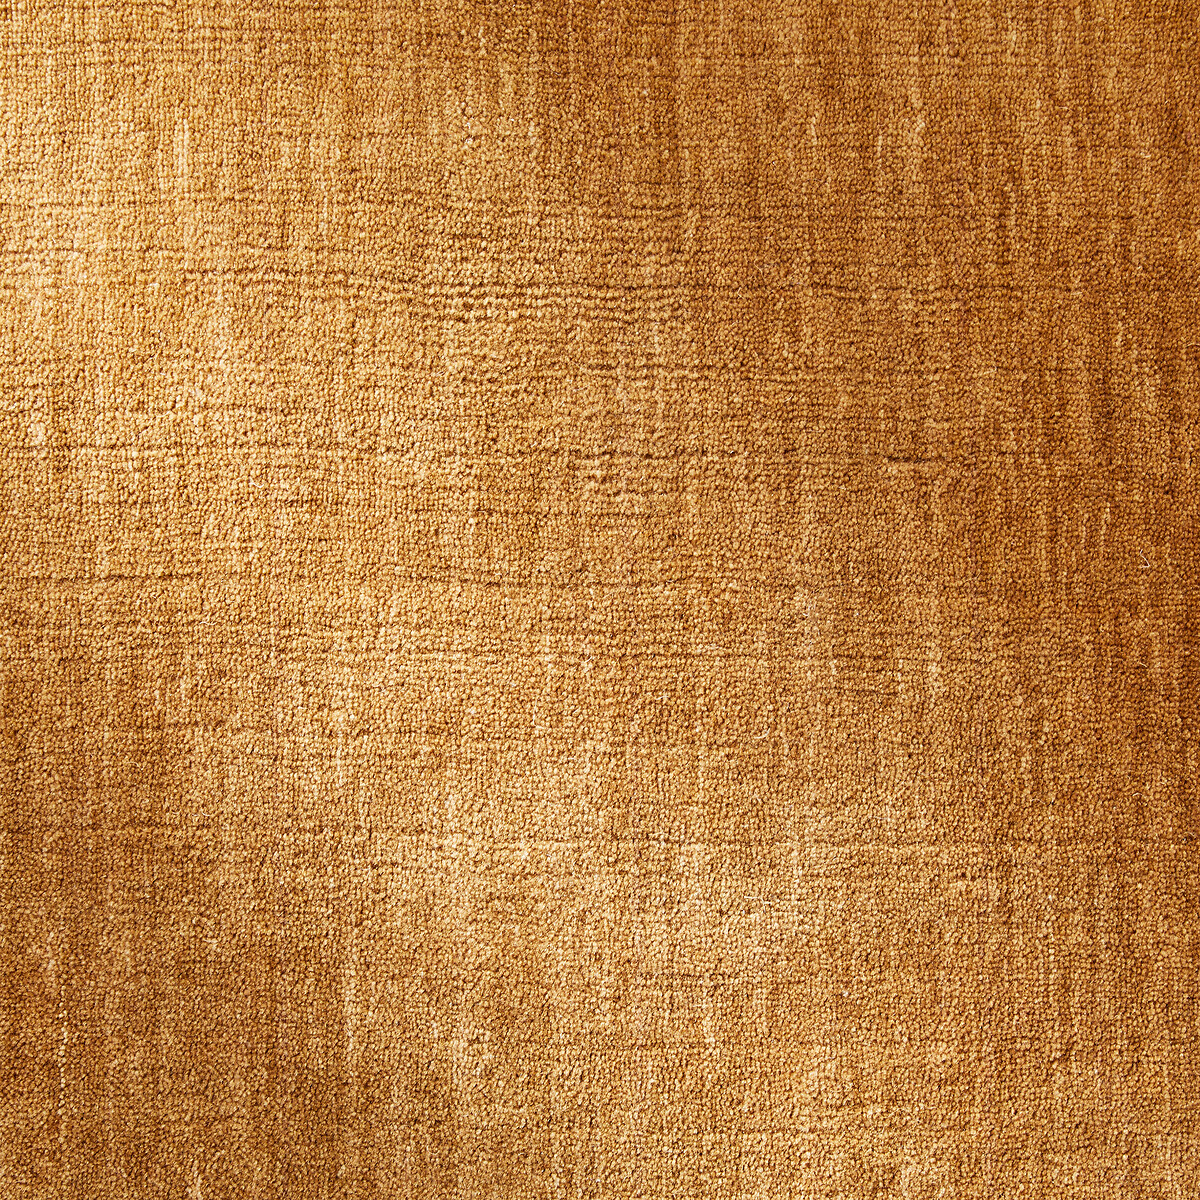 Ковер Из шерсти сотканный вручную Hotep 120 x 180 см желтый LaRedoute, размер 120 x 180 см - фото 5